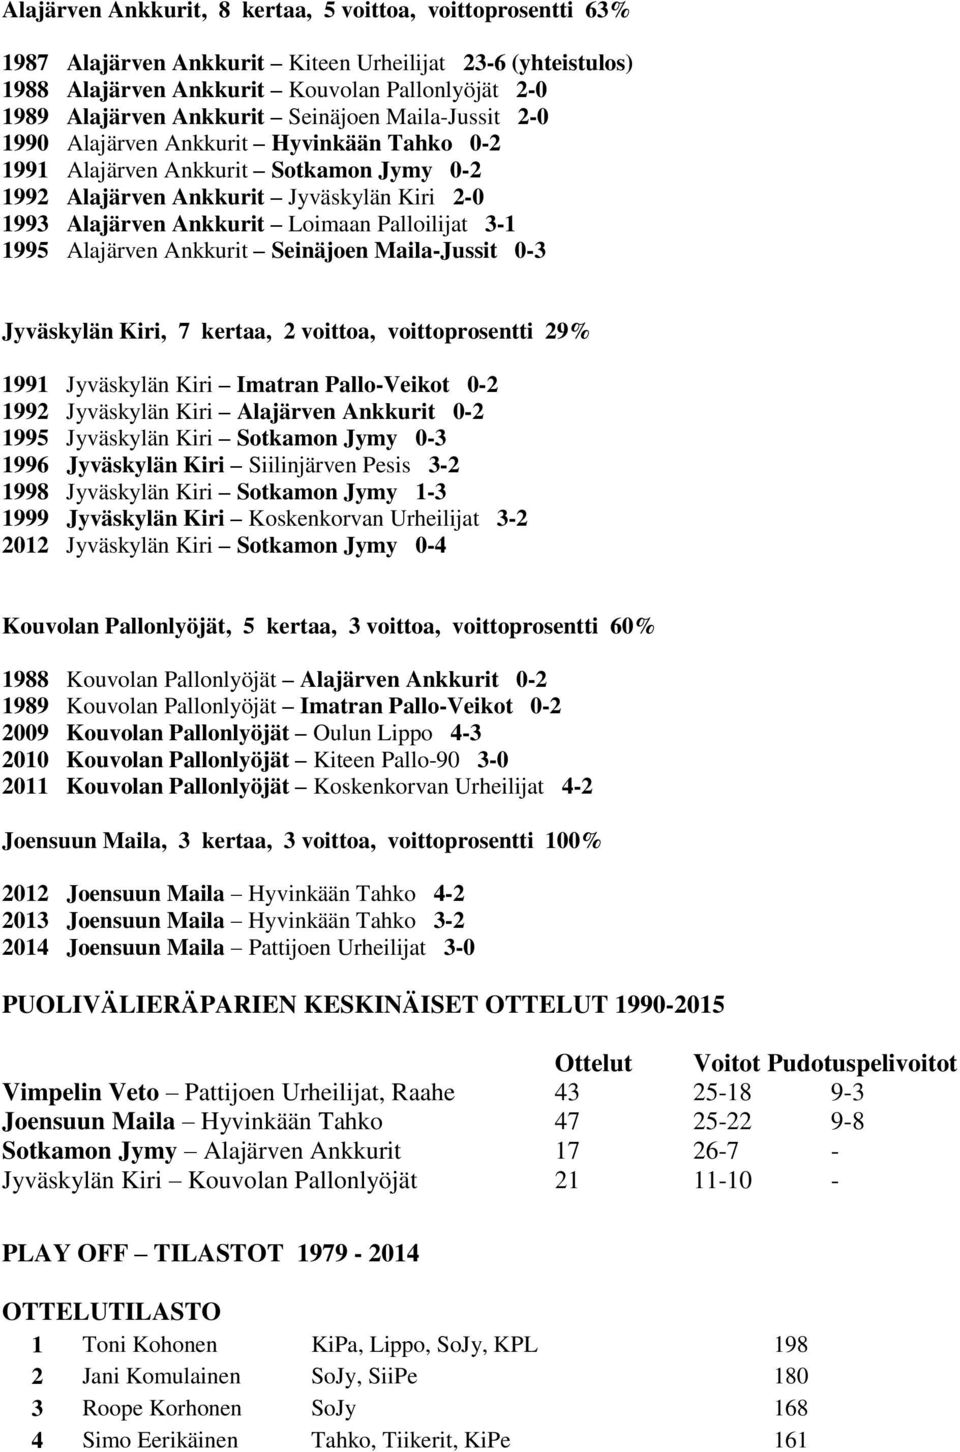 Palloilijat 3-1 1995 Alajärven Ankkurit Seinäjoen Maila-Jussit 0-3 Jyväskylän Kiri, 7 kertaa, 2 voittoa, voittoprosentti 29% 1991 Jyväskylän Kiri Imatran Pallo-Veikot 0-2 1992 Jyväskylän Kiri